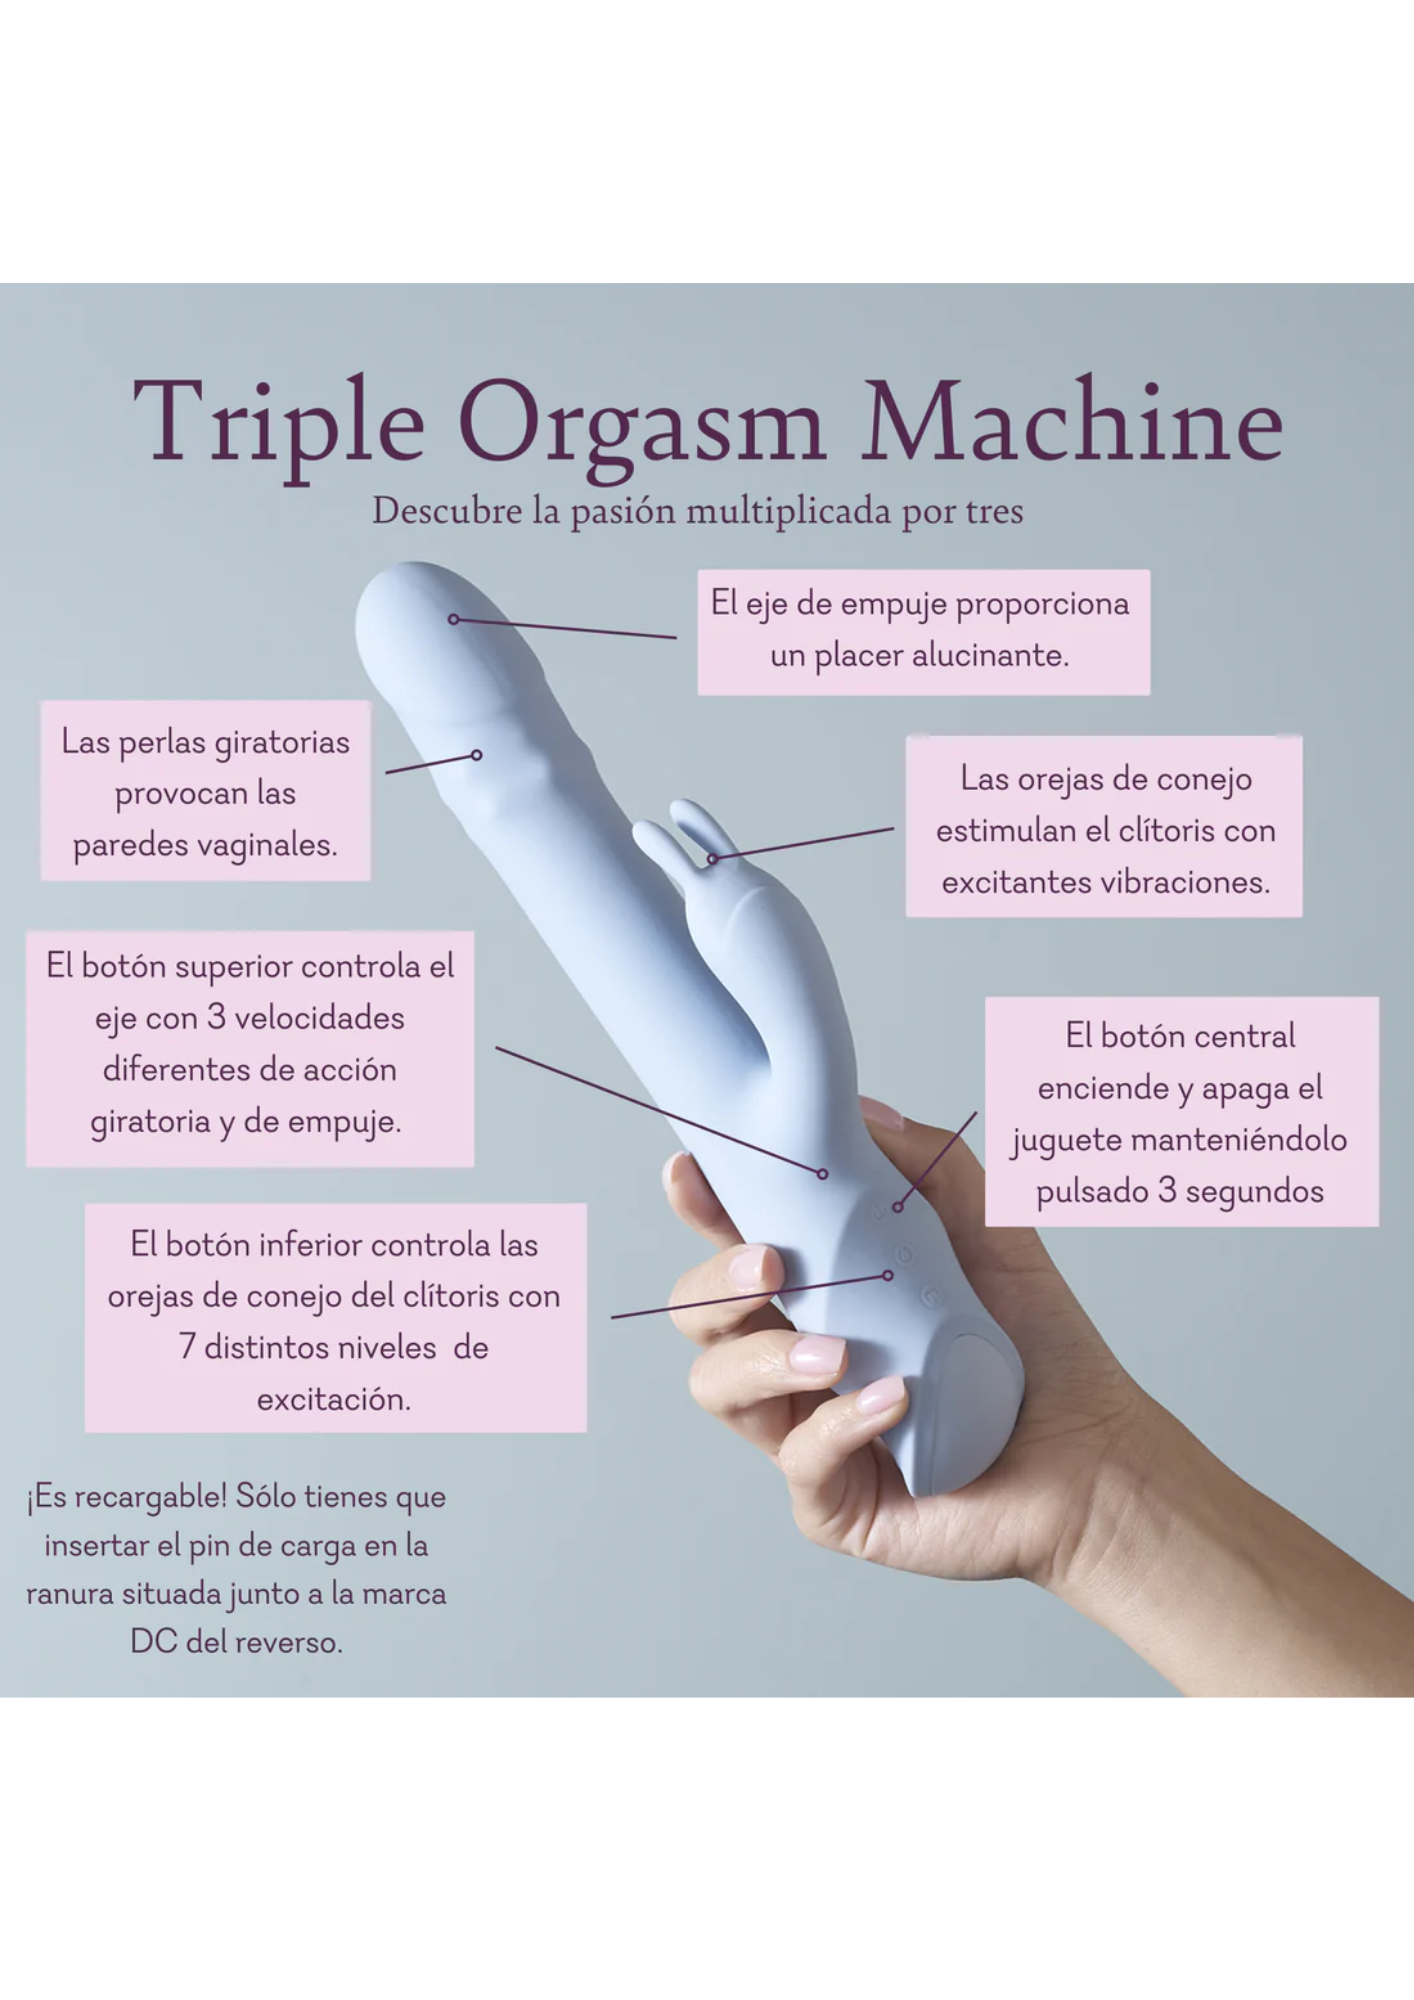 Triple Orgasm Machine (TOM) (73)